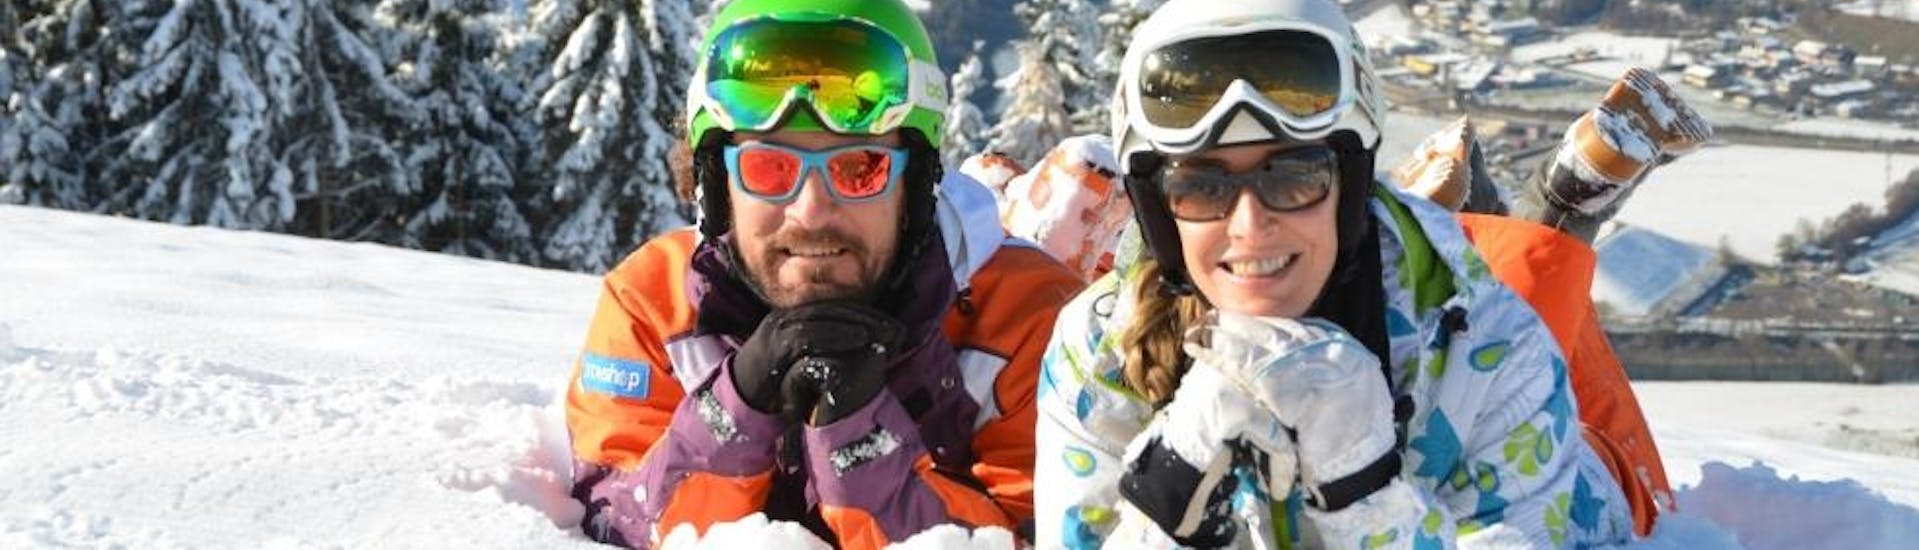 Skikurs für Erwachsene für alle Levels mit Skischule Toni Gruber.